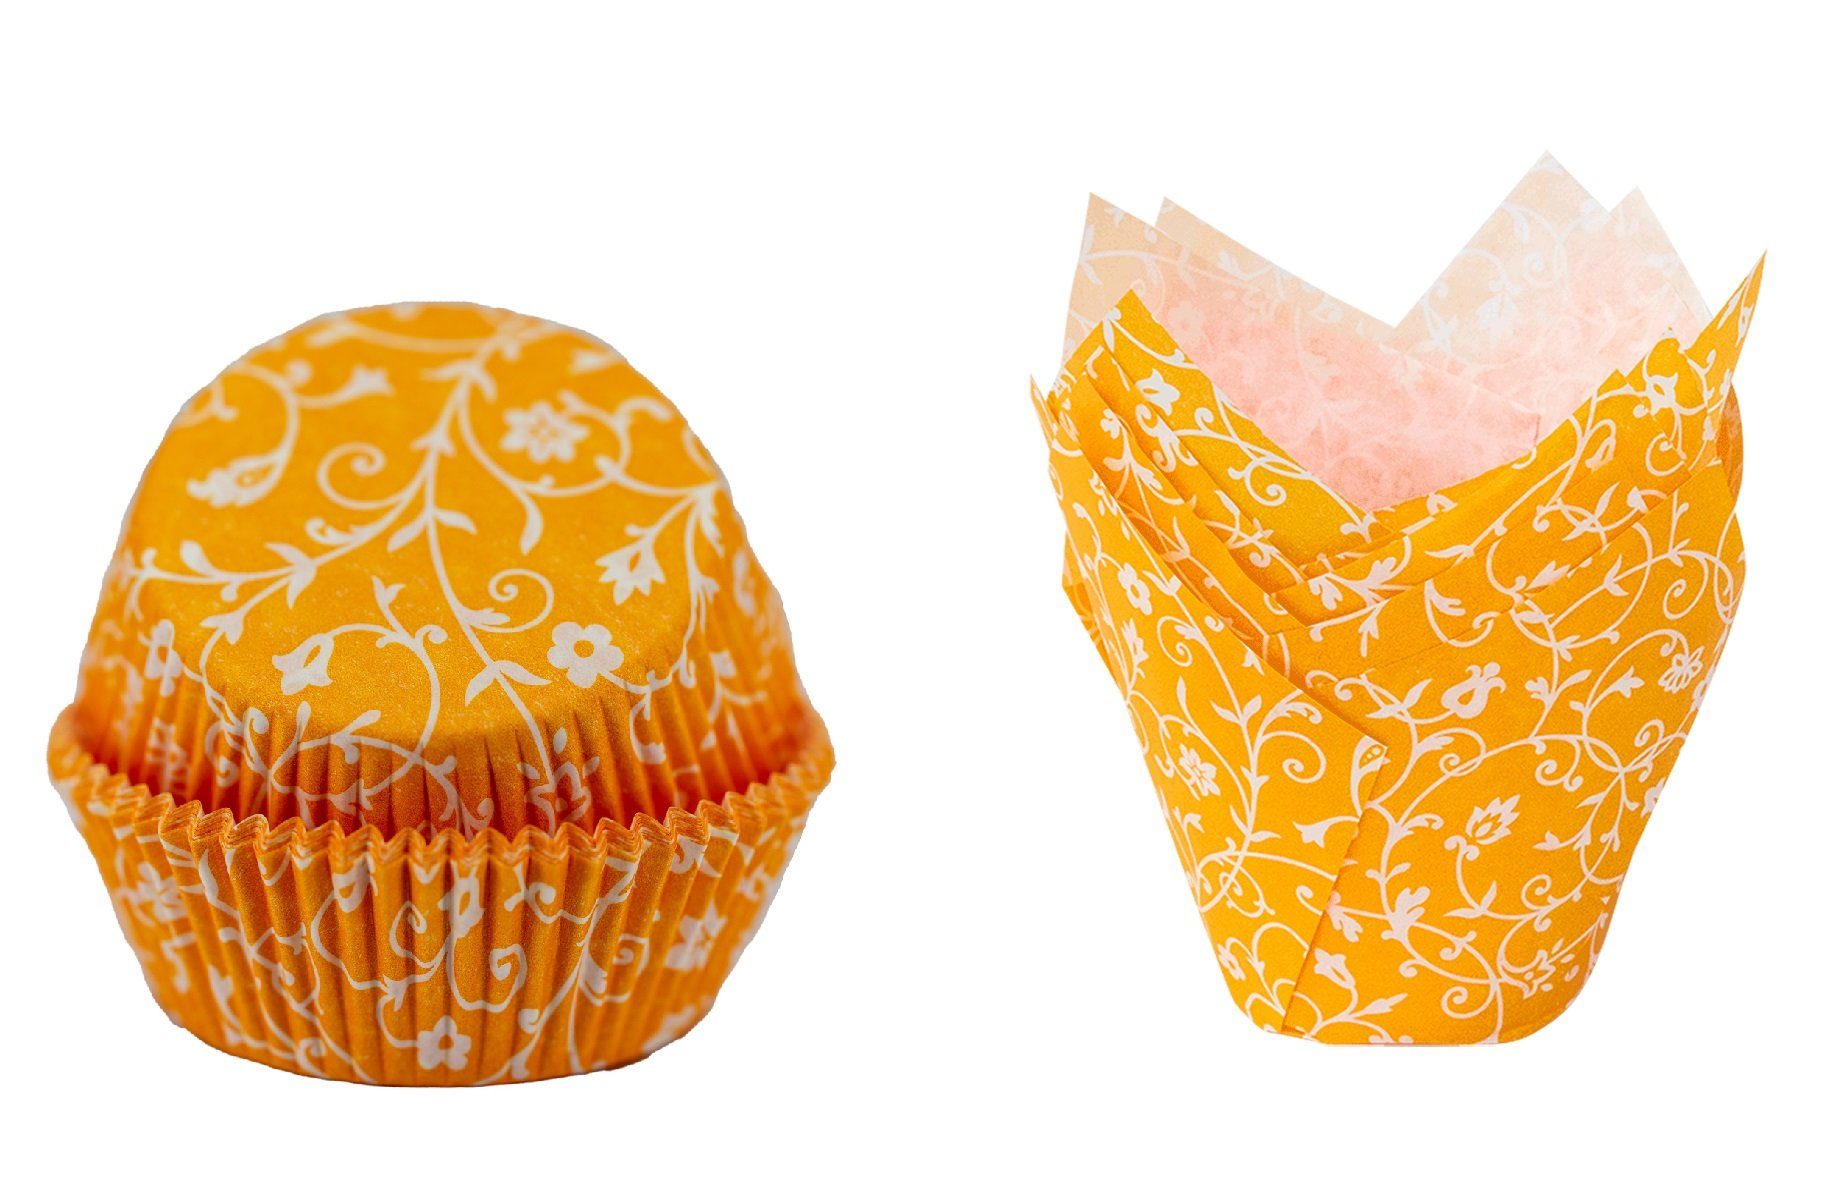 Demmler Muffinform Mango (Orange) mit weißem Muster, Papier Backform Set  mit Muffinförmchen & Tulip-Wraps - Made in Germany